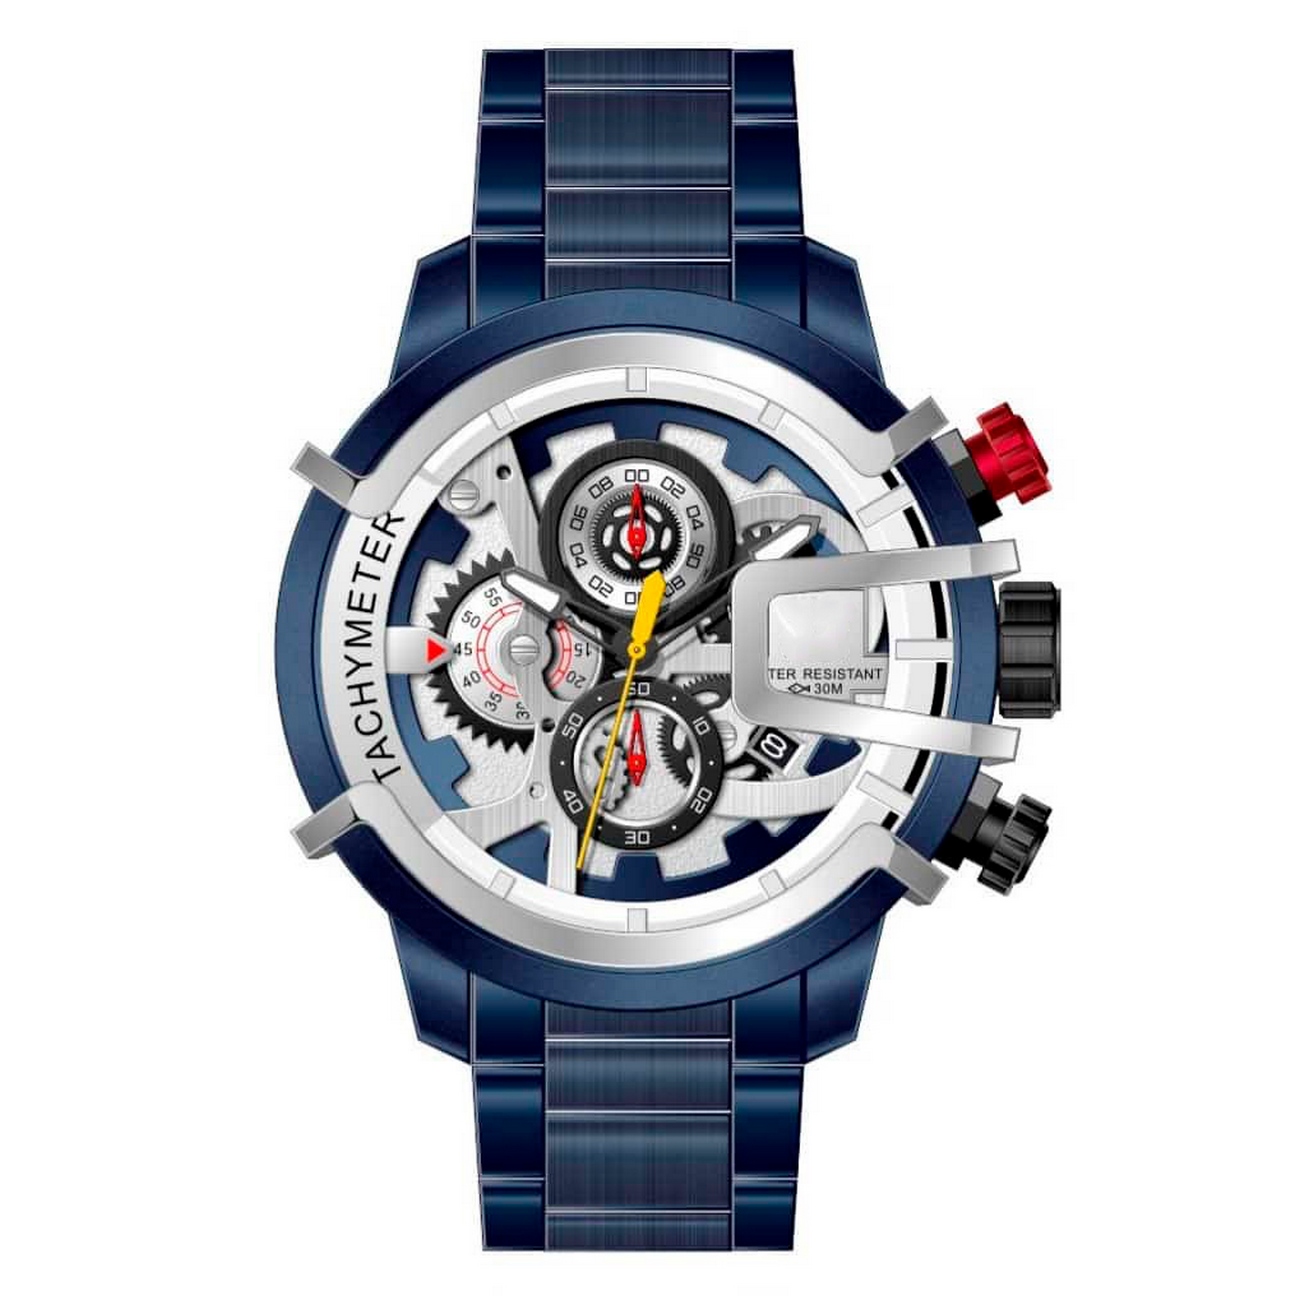 Reloj G-force Original H3911g Cronografo Azul + Estuche